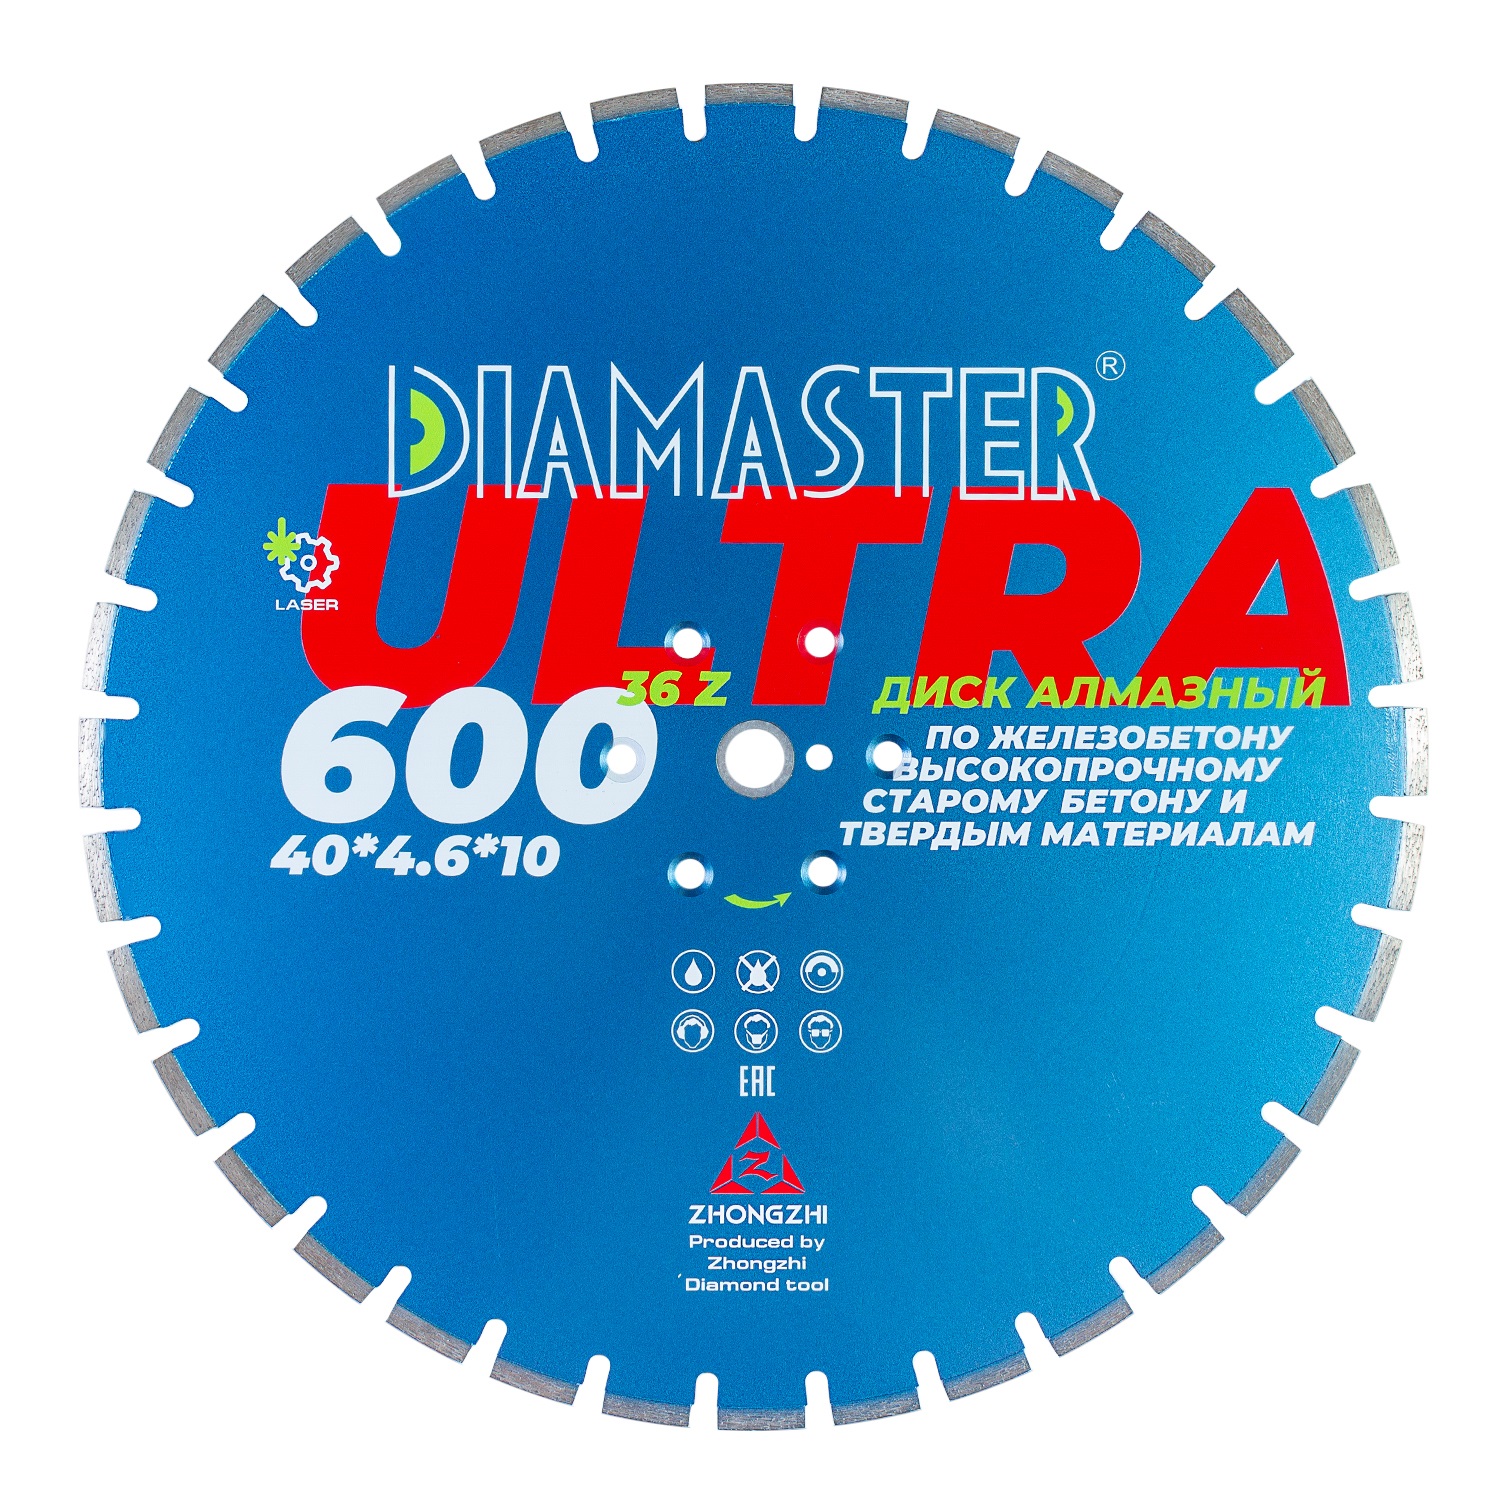 Диск сегментный Laser ULTRA д.600*3,2*25,4 (40*4,6*10)мм | 36z/железобетон/wet/dry DIAMASTER диск сегментный laser ultra д 350 2 2 25 4 20 0 40 3 2 10 мм 24z железобетон wet dry diamaster